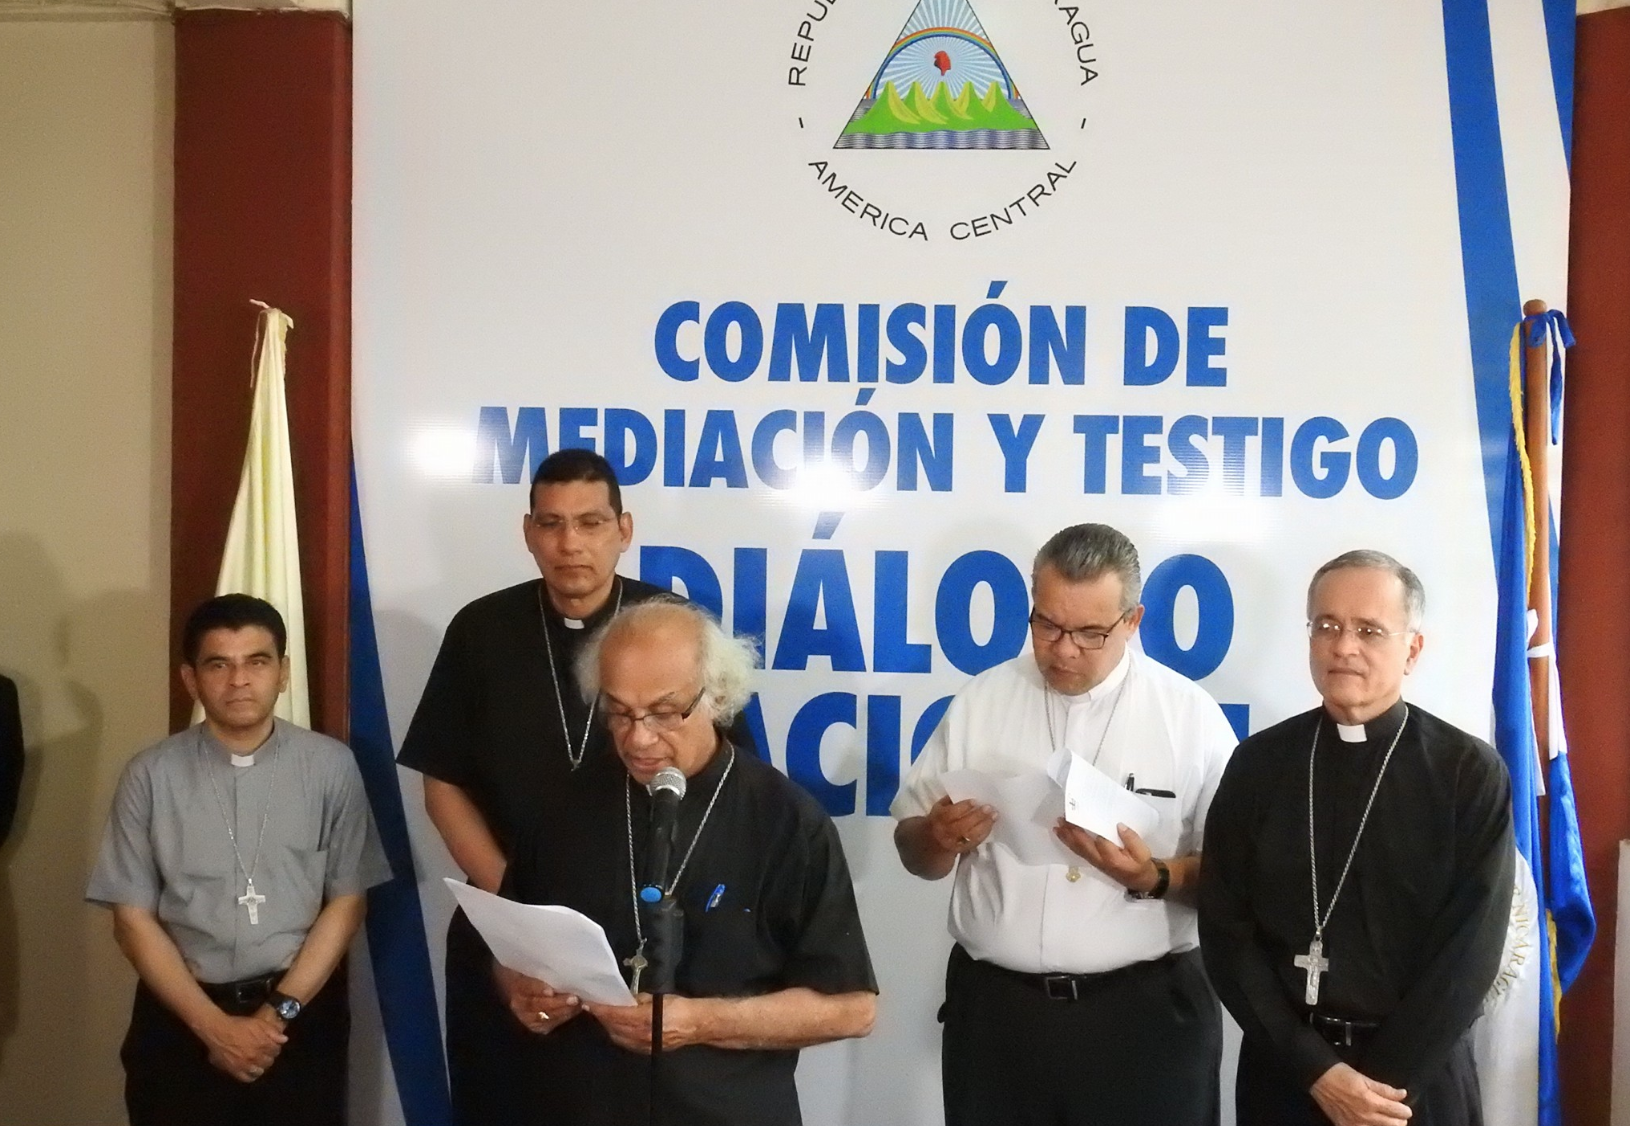 Obispos exigen al Gobierno de Daniel Ortega que invite a la CIDH y cese la represión para iniciar diálogo